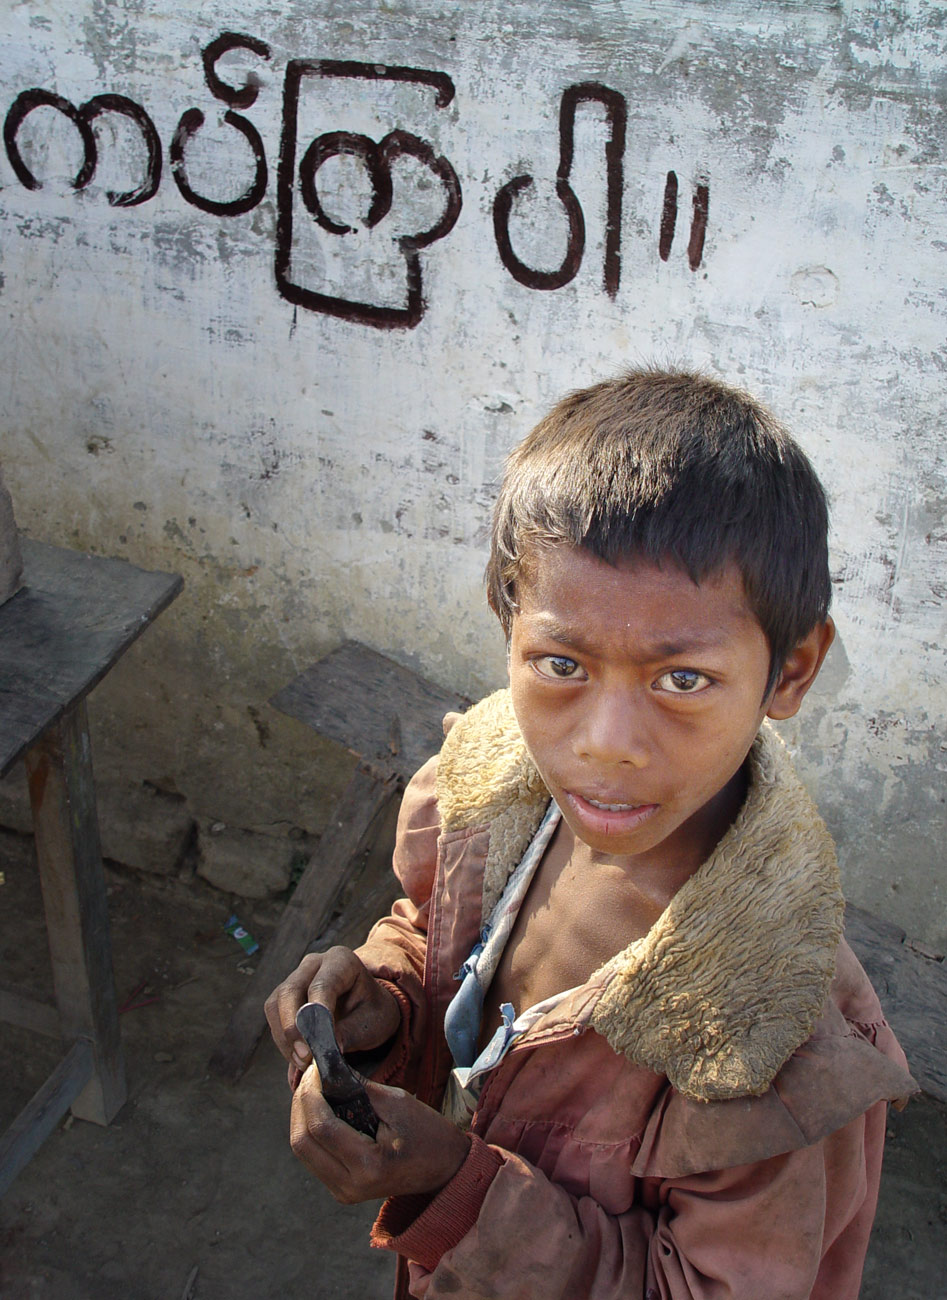 Mrauk U, Burma, 2005